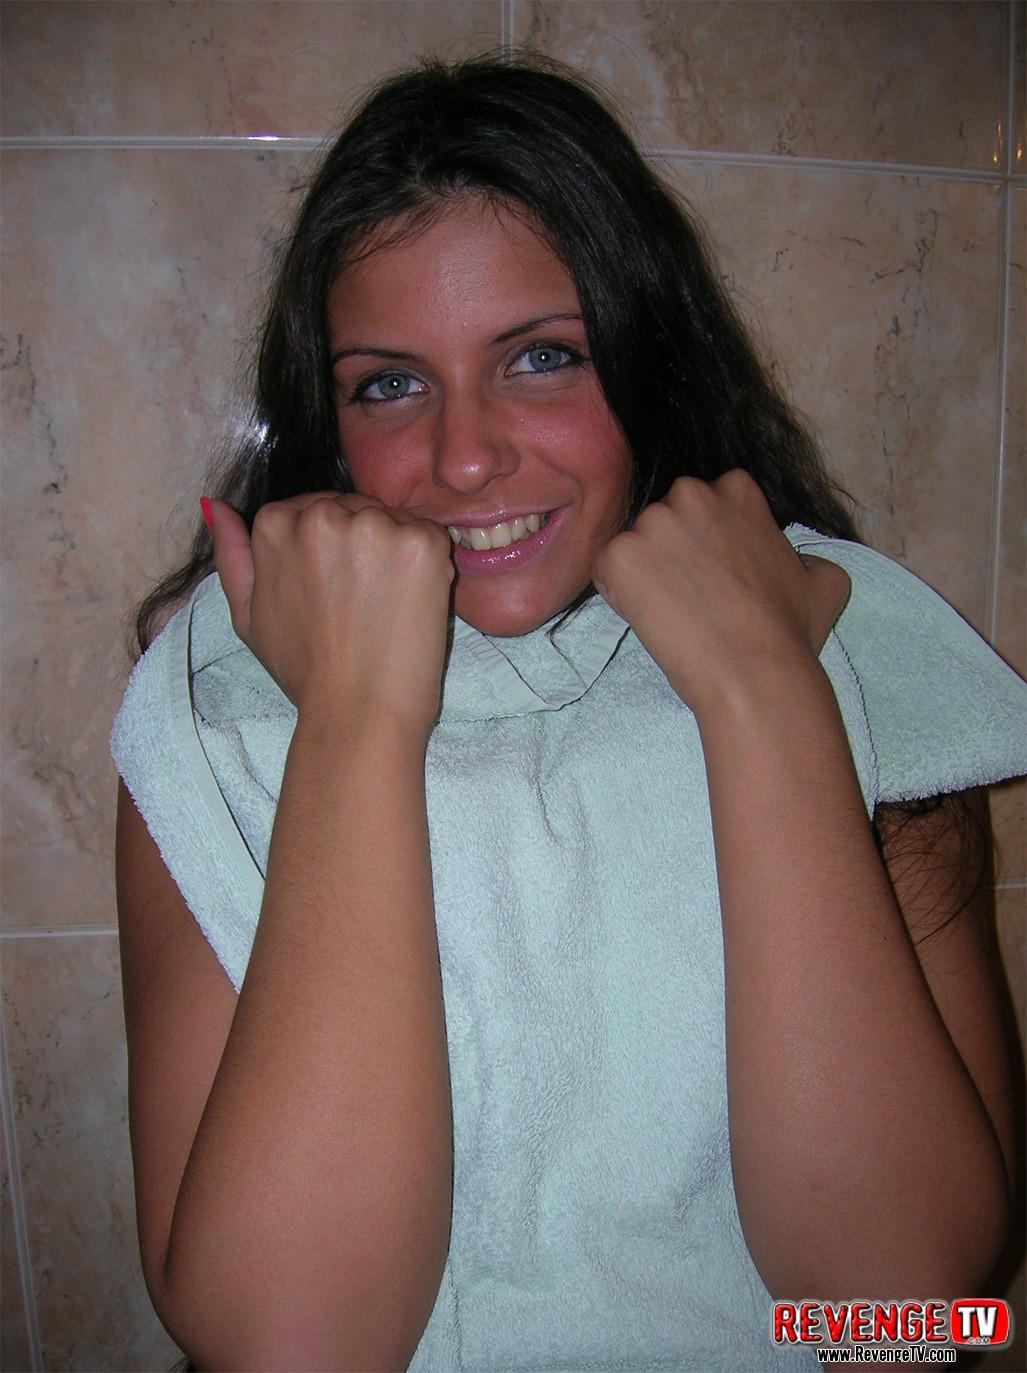 Irina glitzernden und nackten 18 Jahre alten Körper frisch aus der Dusche
 #77125679